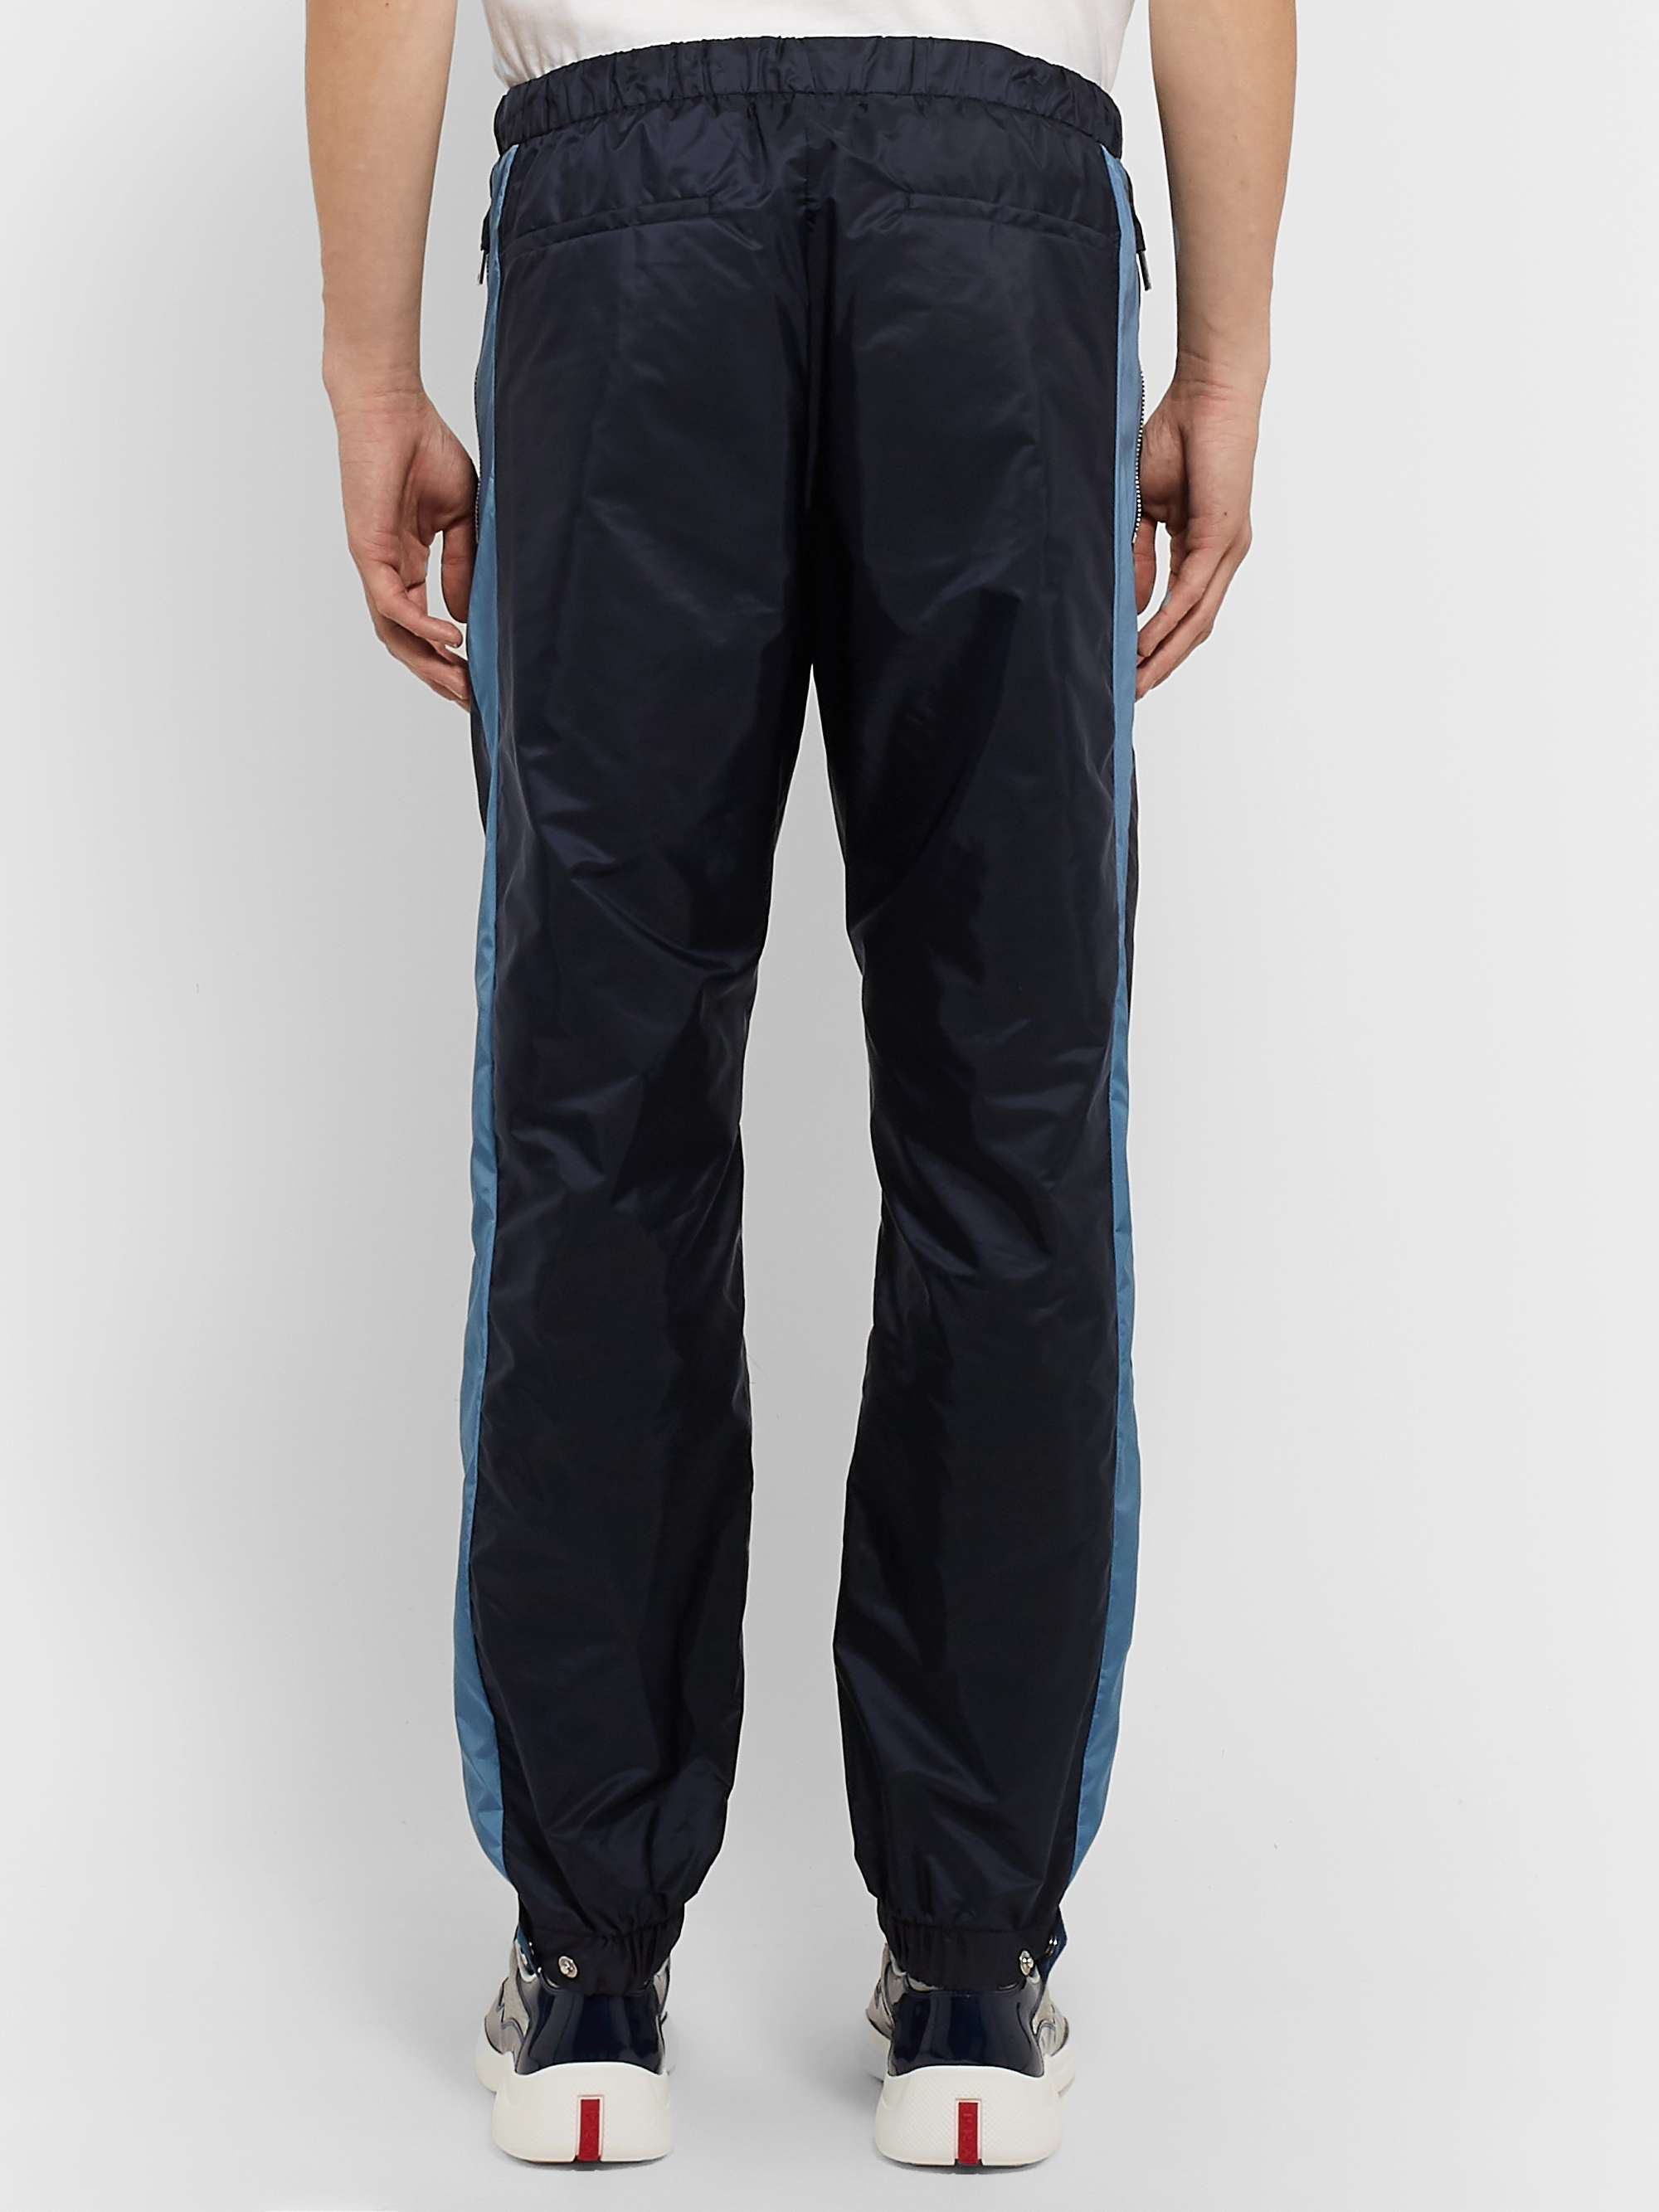 PRADA Slim-Fit Nylon-Shell Track Pants for Men | MR PORTER